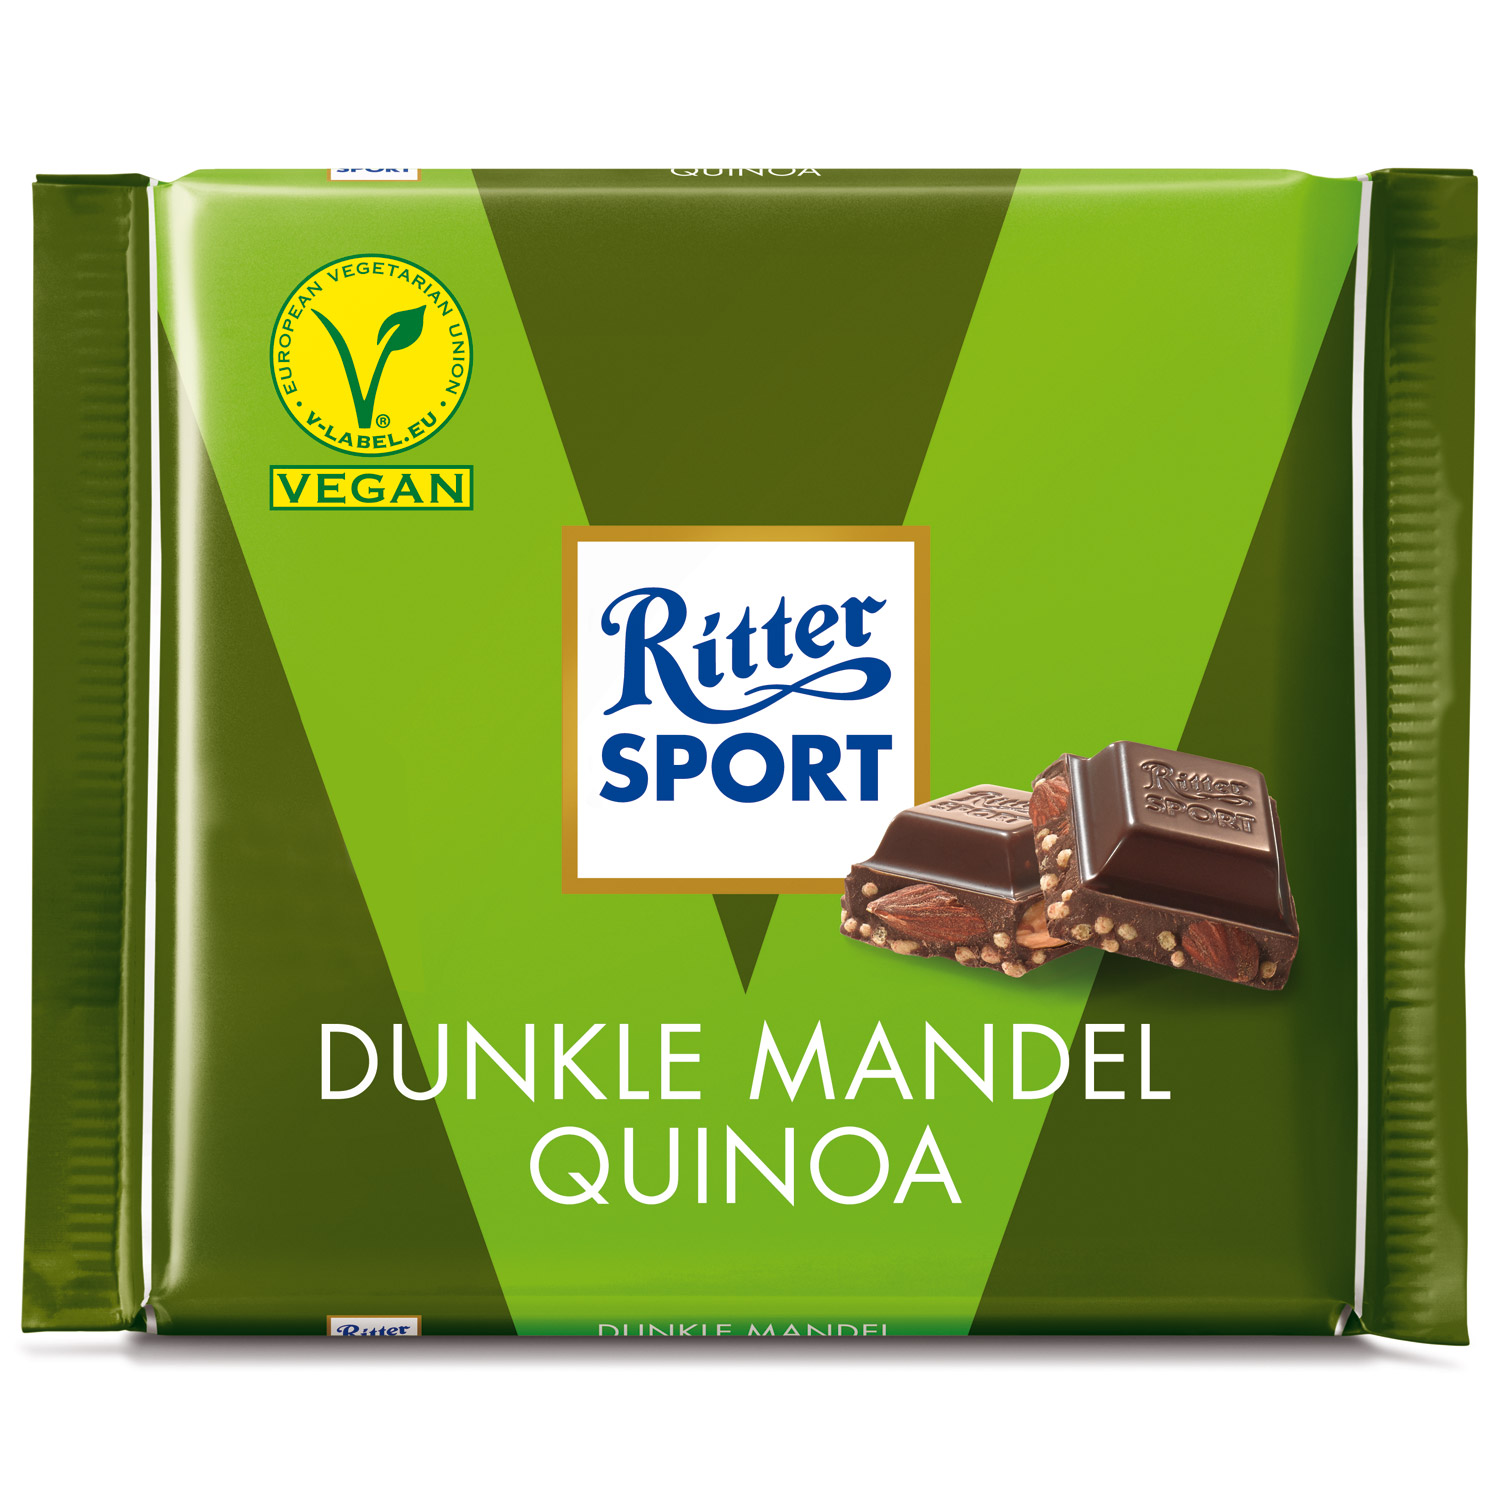 Ritter Sport Dunkle Mandel Quinoa | Online kaufen im World of Sweets Shop